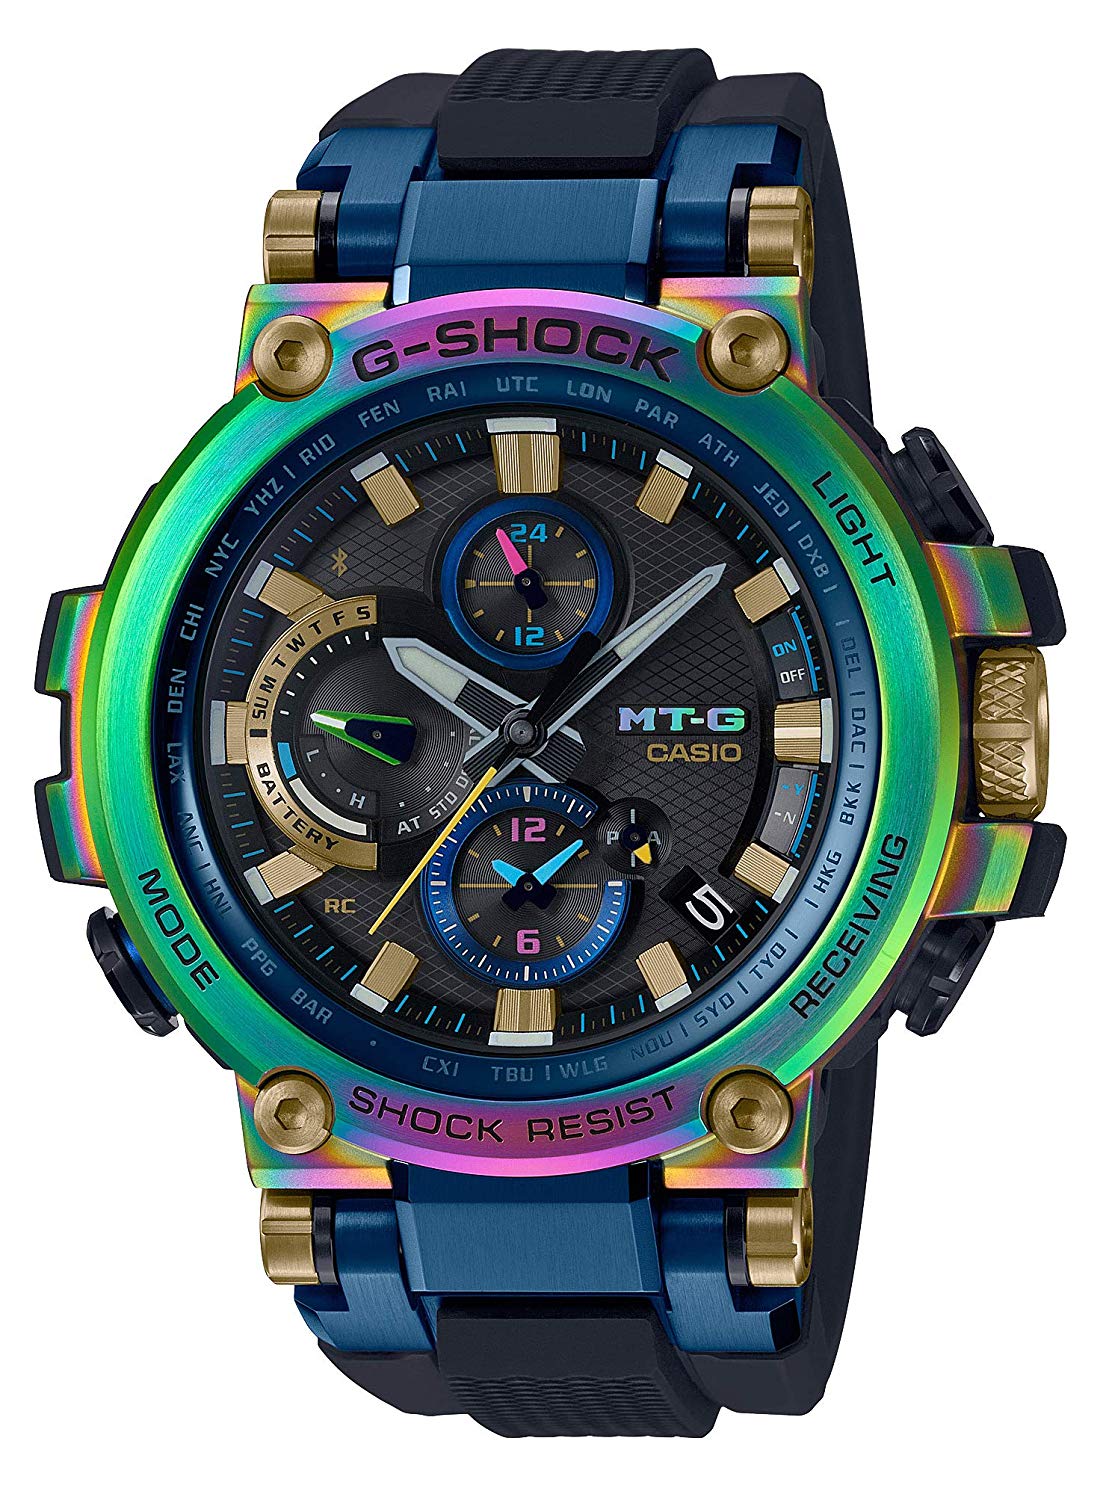 CASIO-G-SHOCK-MTG-B1000RB-2AJR-MT-G-20th-Anniversary-Limited-Edition-Wristwatch-Lunar-Rainbow